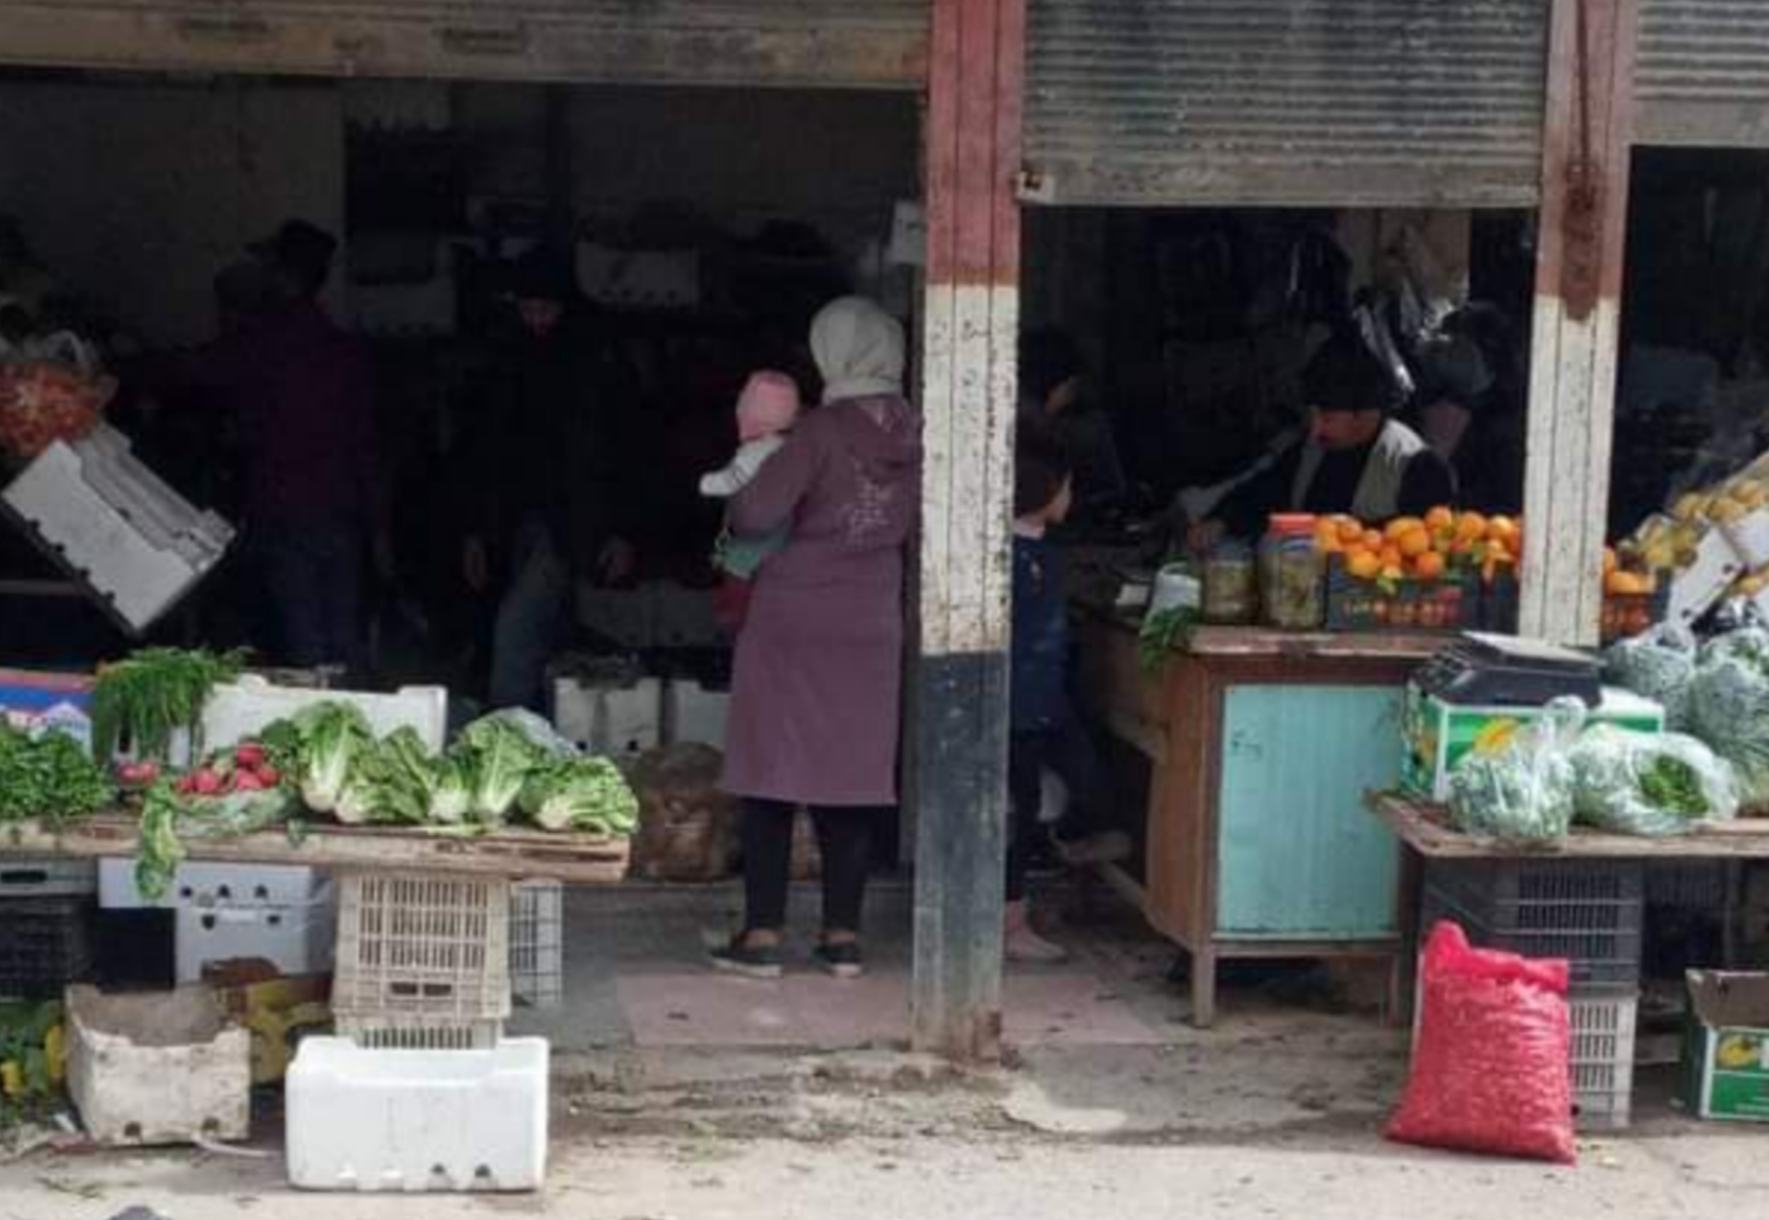 محلات الخضار في مخيم دنون ترمي الفواكه والخضروات بسبب الأزمة الاقتصادية